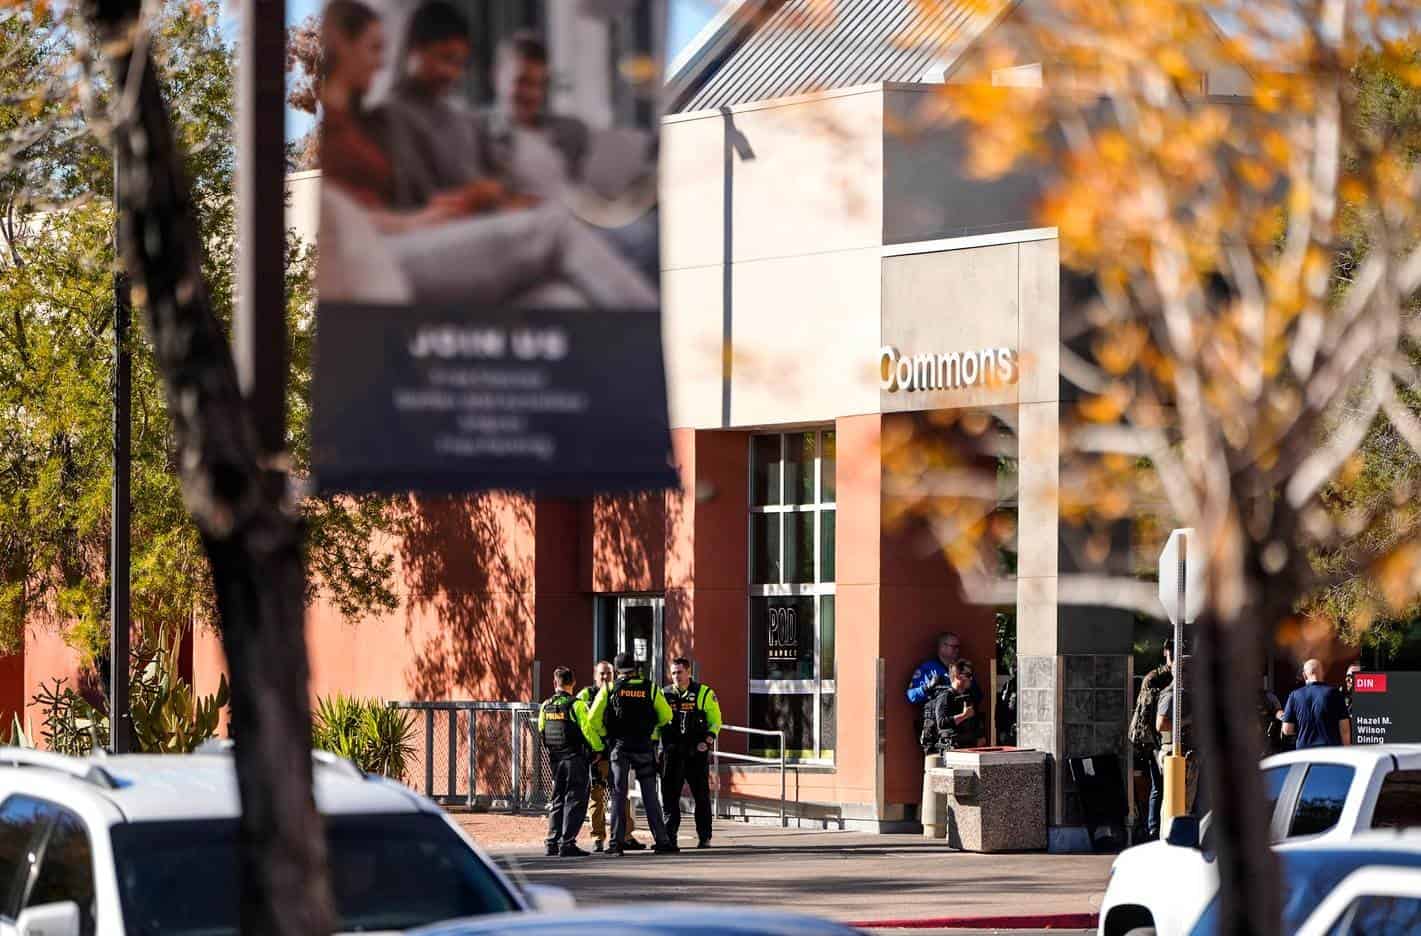 Tres muertos y un herido crítico en un tiroteo en una universidad de Las Vegas